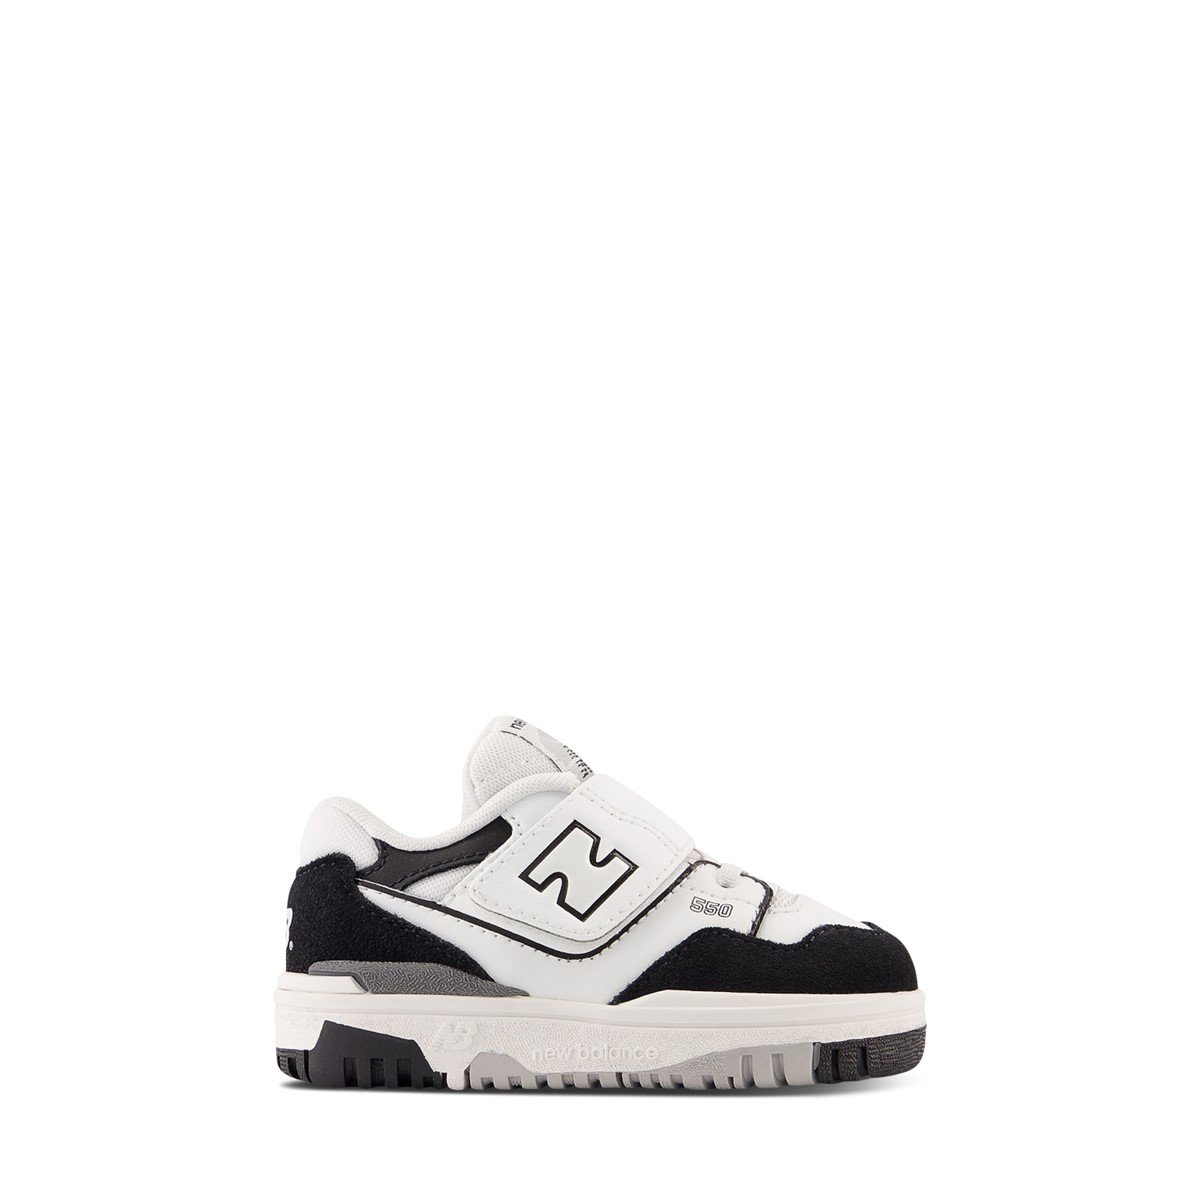 Toddler's' BB550 Sneakers in White/Black